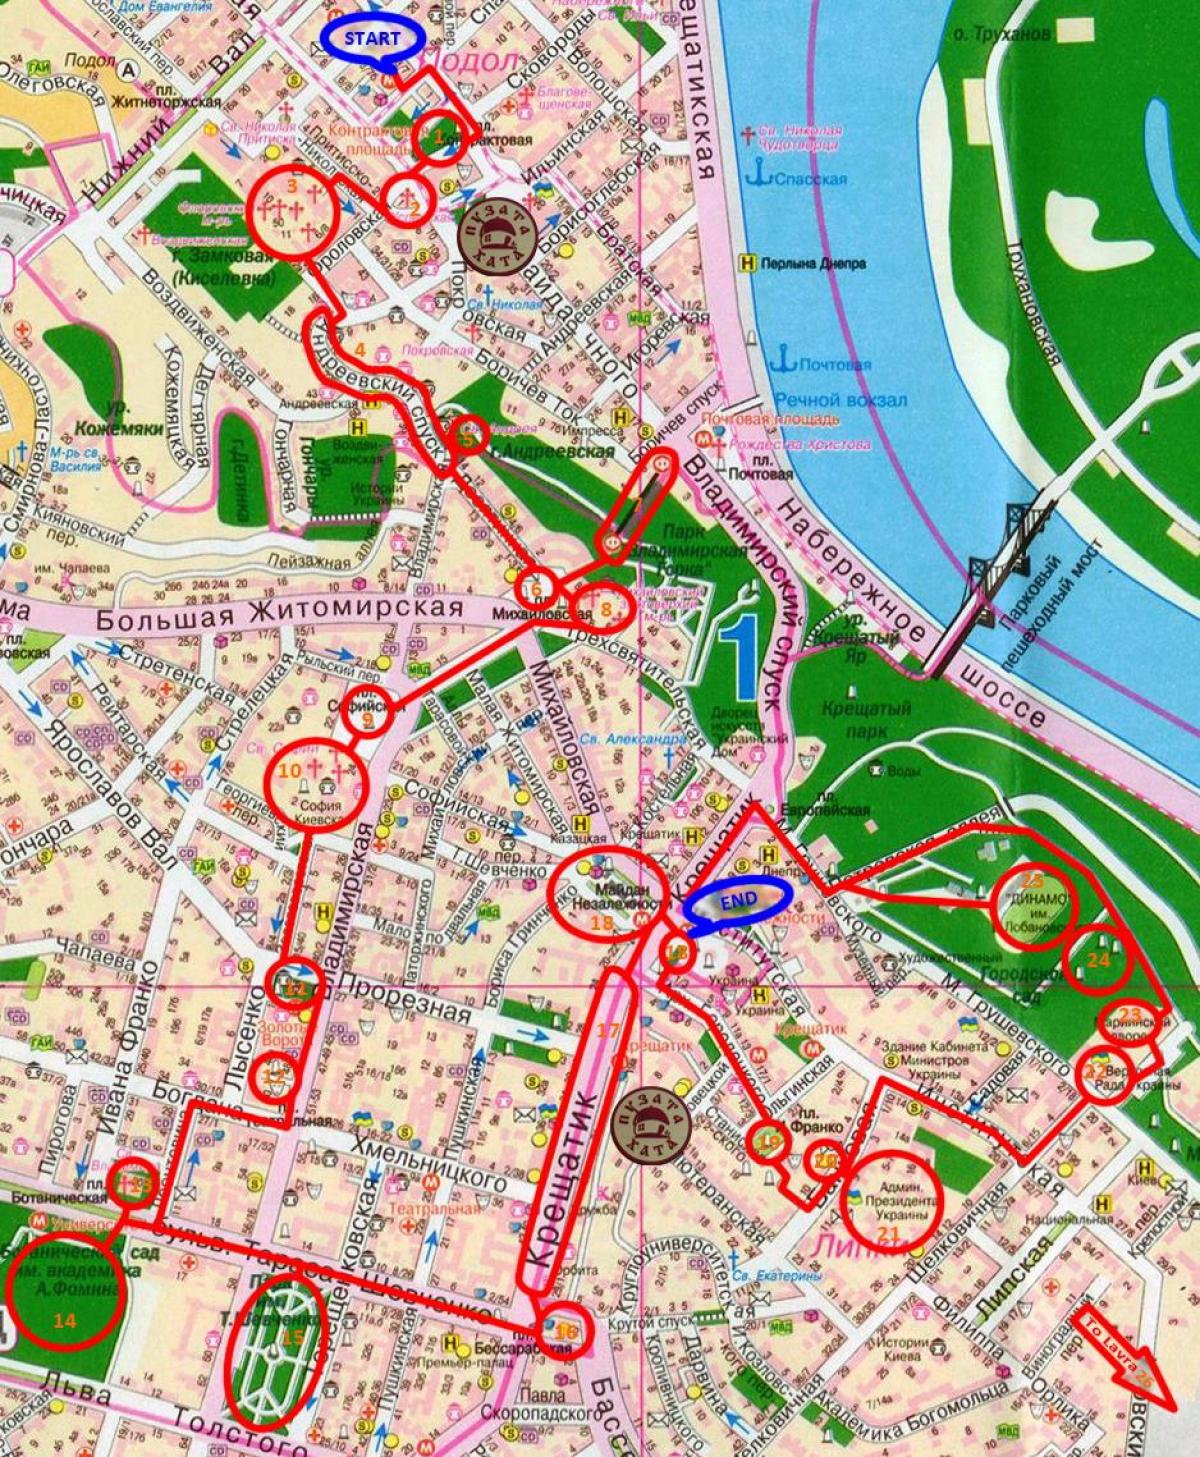 Kiev walking tours map